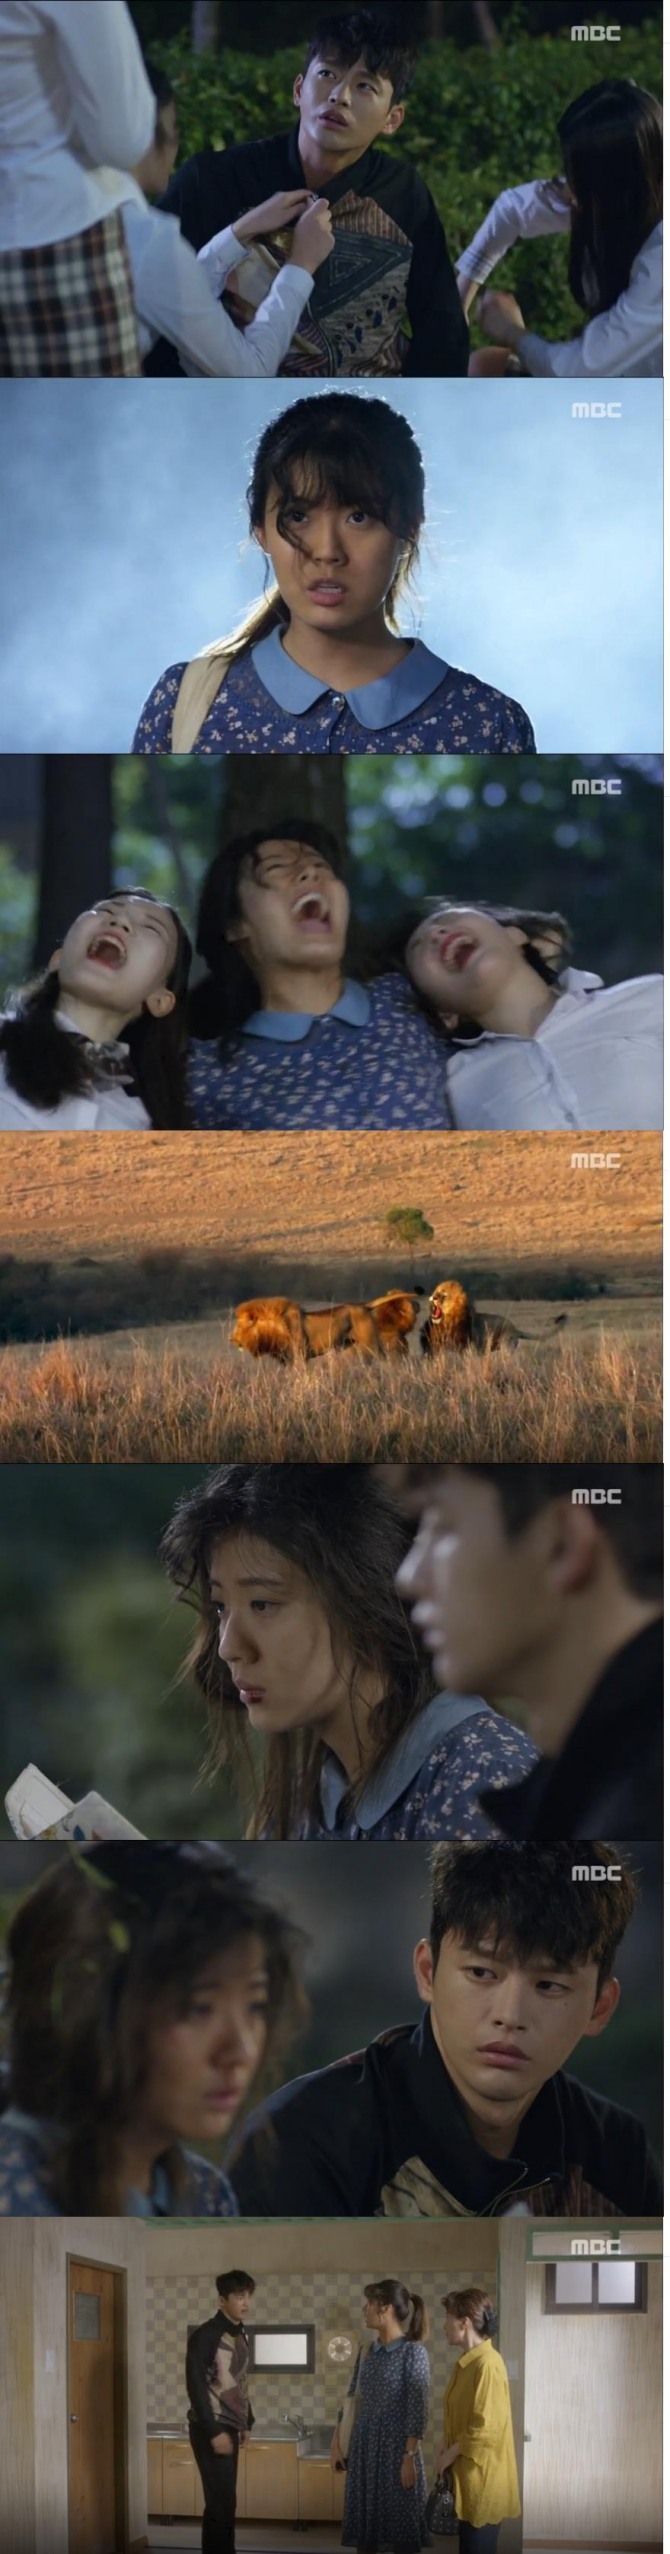 22일 밤 방송된 MBC 수목드라마 '쇼핑왕 루이' 2회에서는 기억상실남이 된 루이(서인국)과 고복실(남지현)이 옥탑방에서 무보증으로 동거를 시작하게 되는 장면이 그려졌다./사진=MBC 방송 캡처